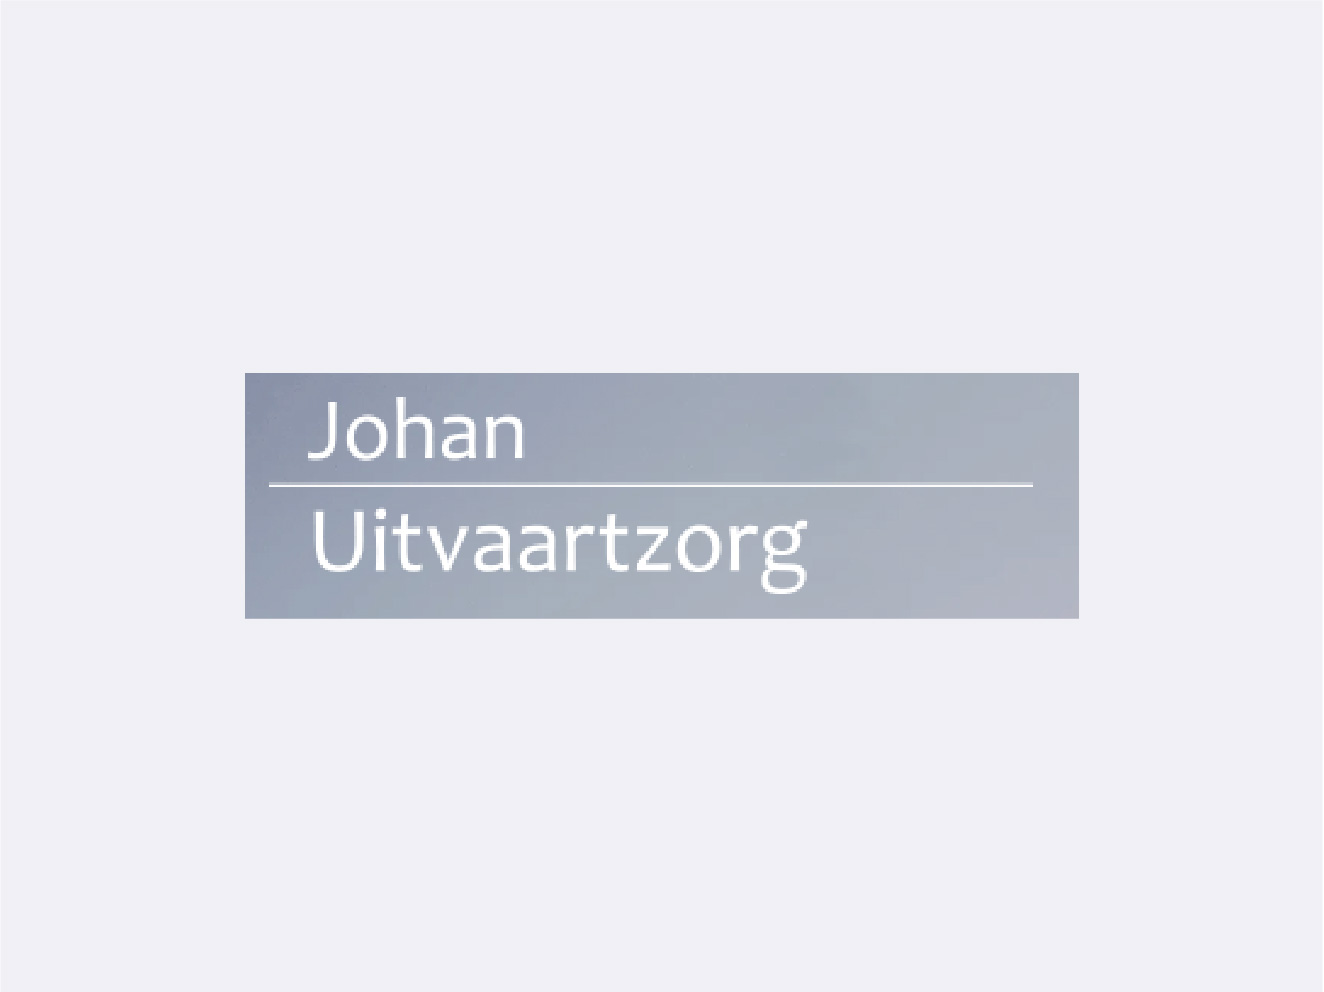 Johan Uitvaartzorg